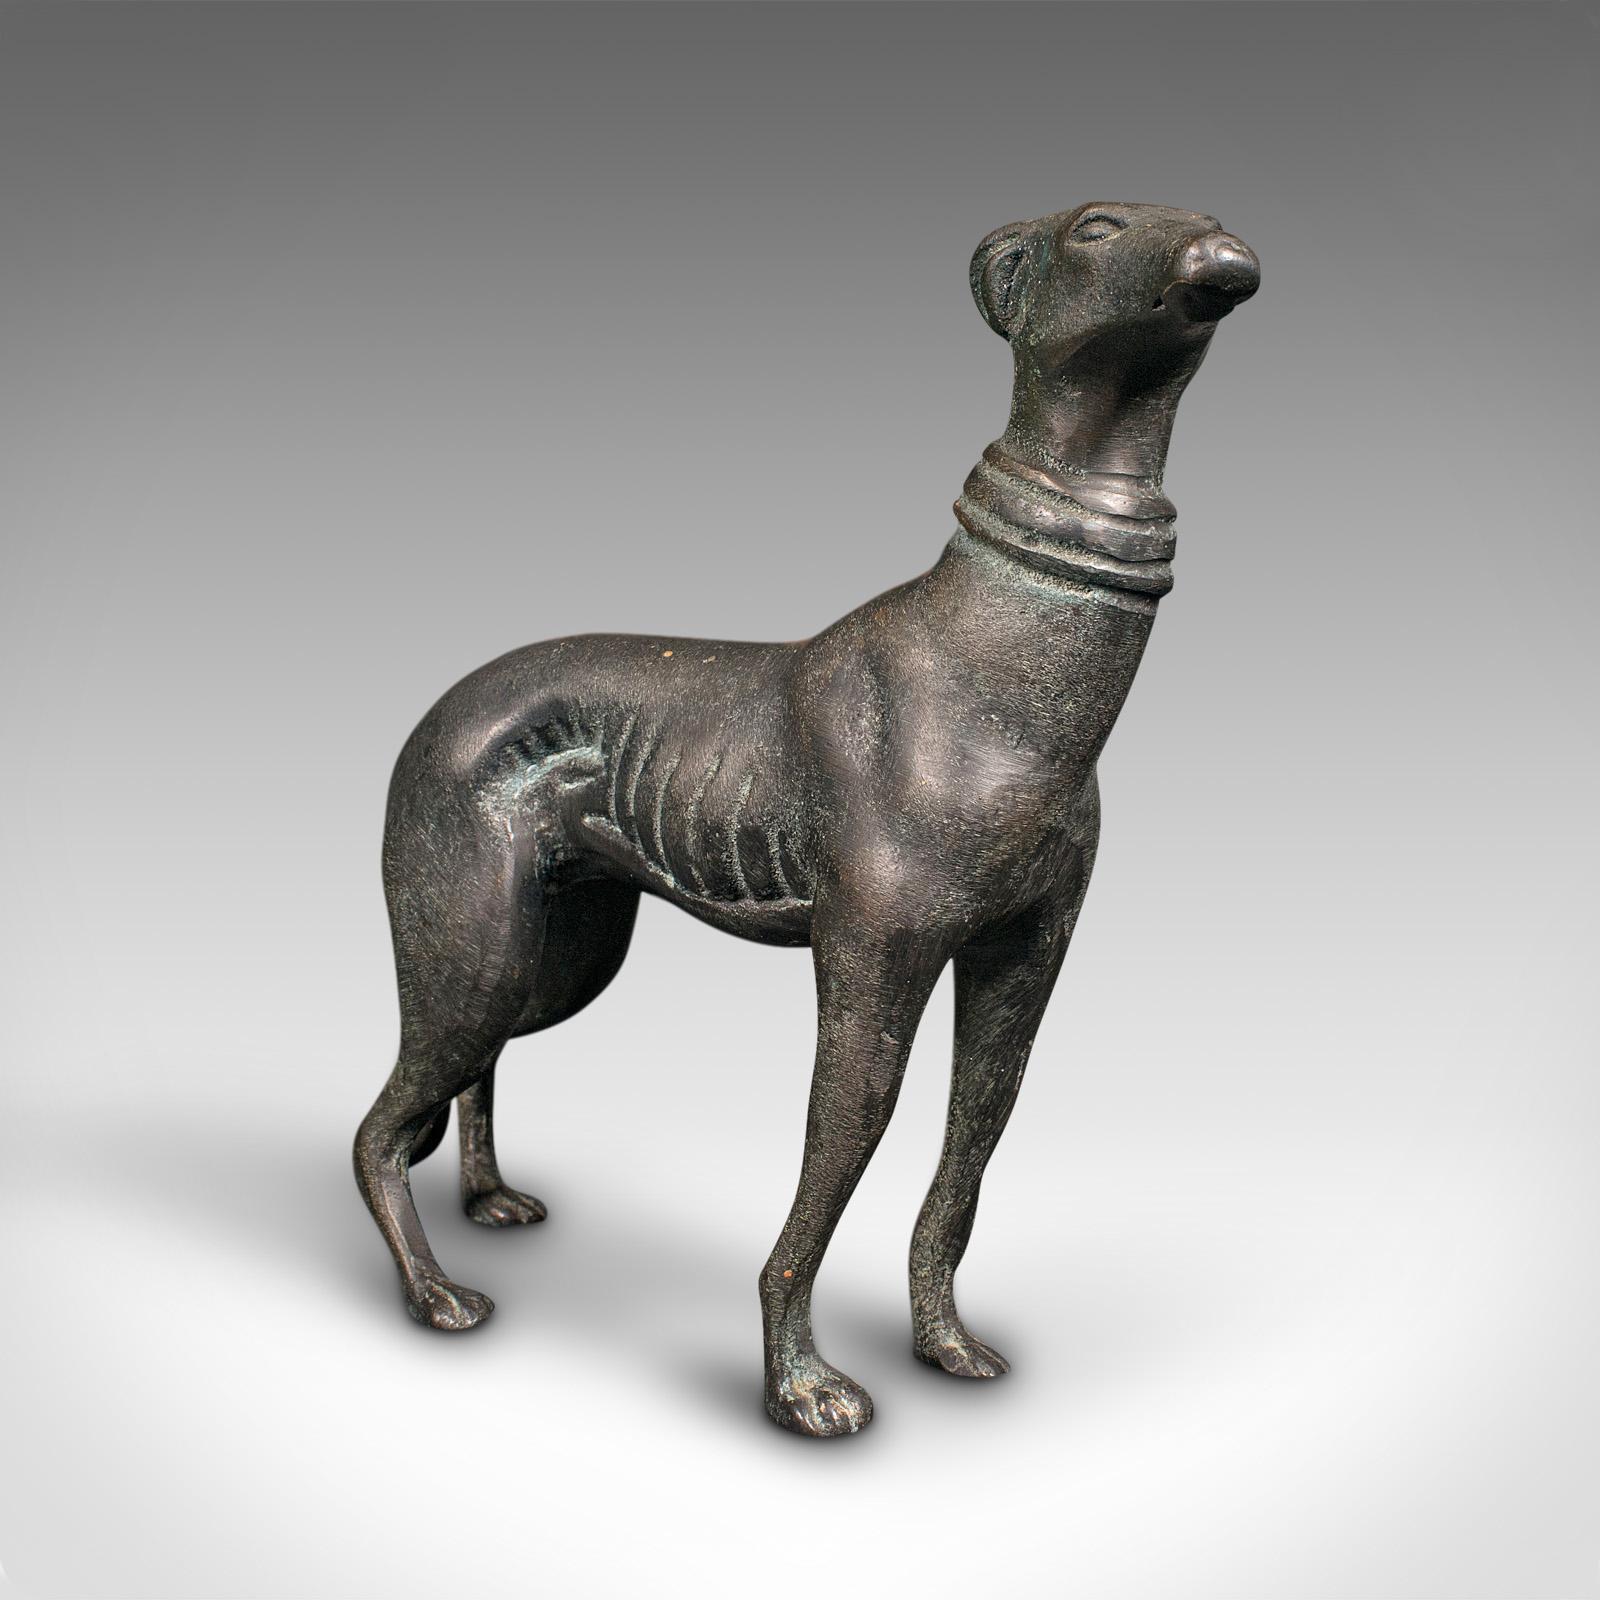 Il s'agit d'une figurine de lévrier vintage. Statue de chien en bronze, datant de la période Art déco, vers 1930.

Gracieux et attachant, un régal pour la vitrine ou le manteau de cheminée.
Patine d'ancienneté souhaitable, en bon état